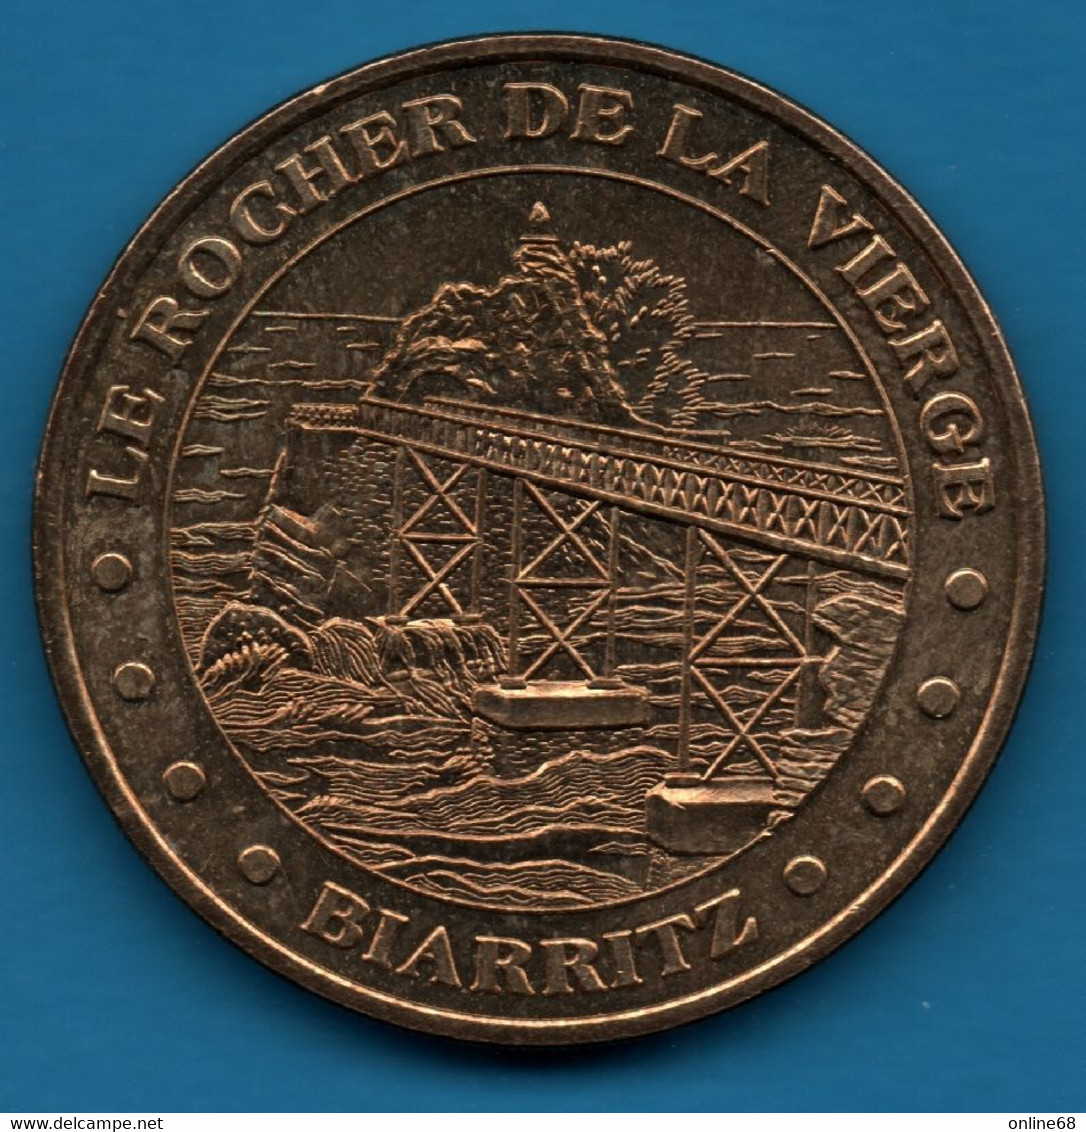 Jeton Touristique - Monnaie De Paris - LE ROCHER DE LA VIERGE BIARRITZ COLLECTION NATIONALE - 2003